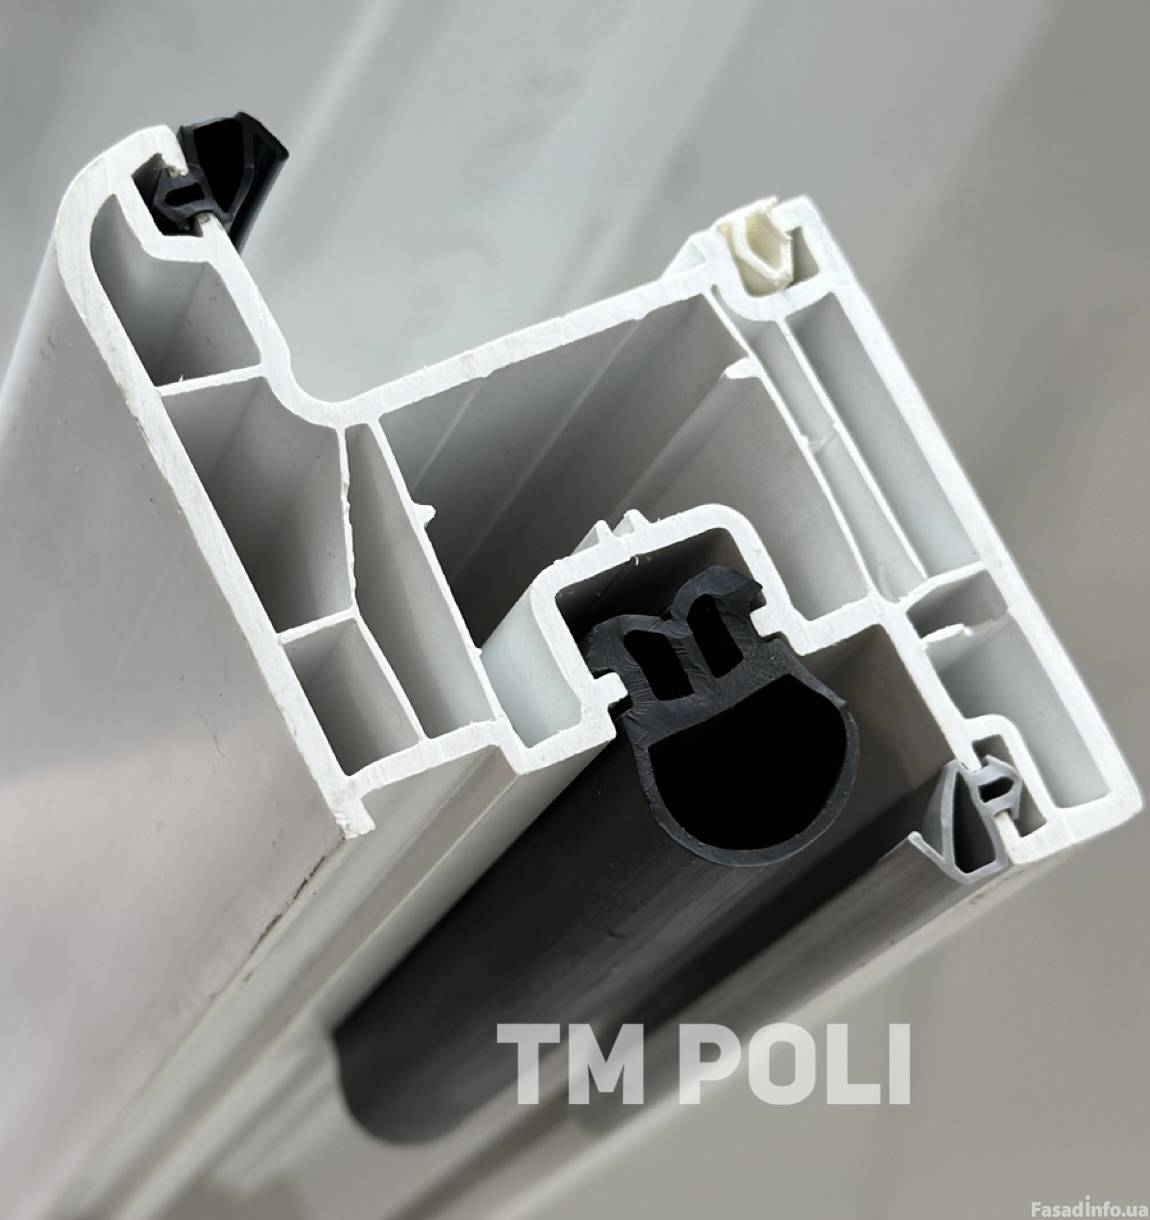 TM POLI запустила розничные продажи уплотнителя для окон и дверей